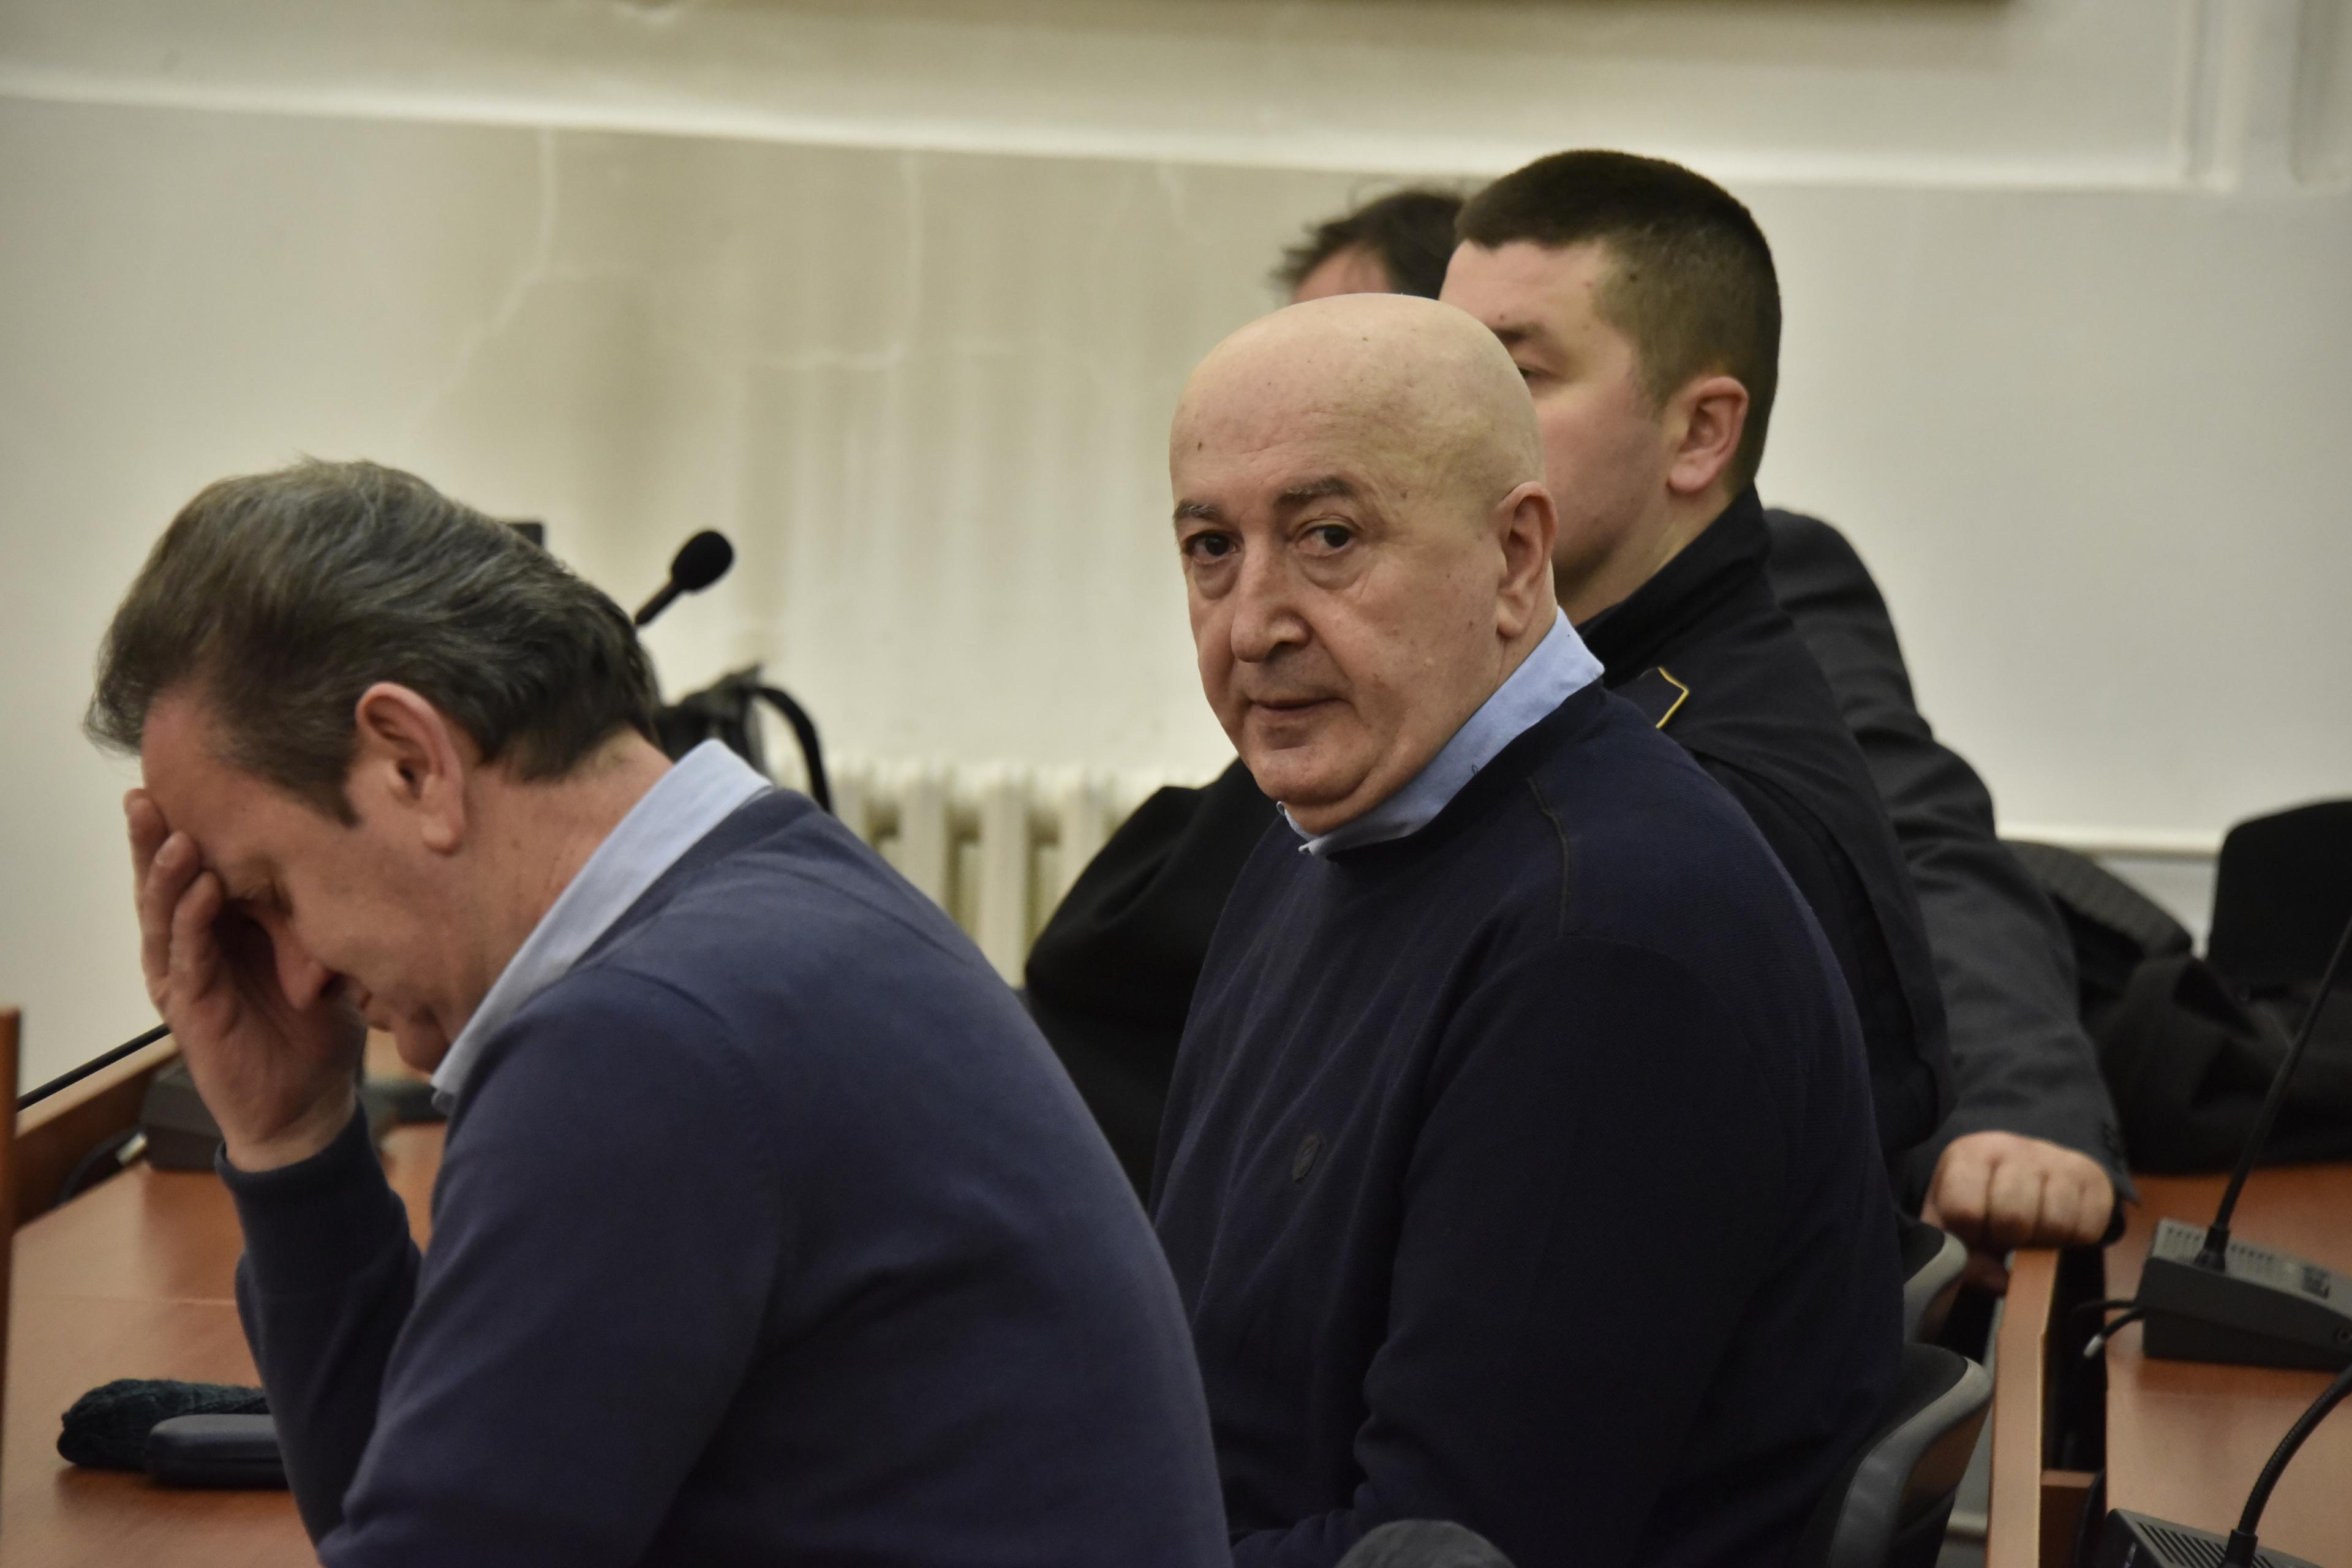 Početak suđenja u predmetu "Pravda" 22. juna, Alija Delimustafić traži laptop u pritvoru